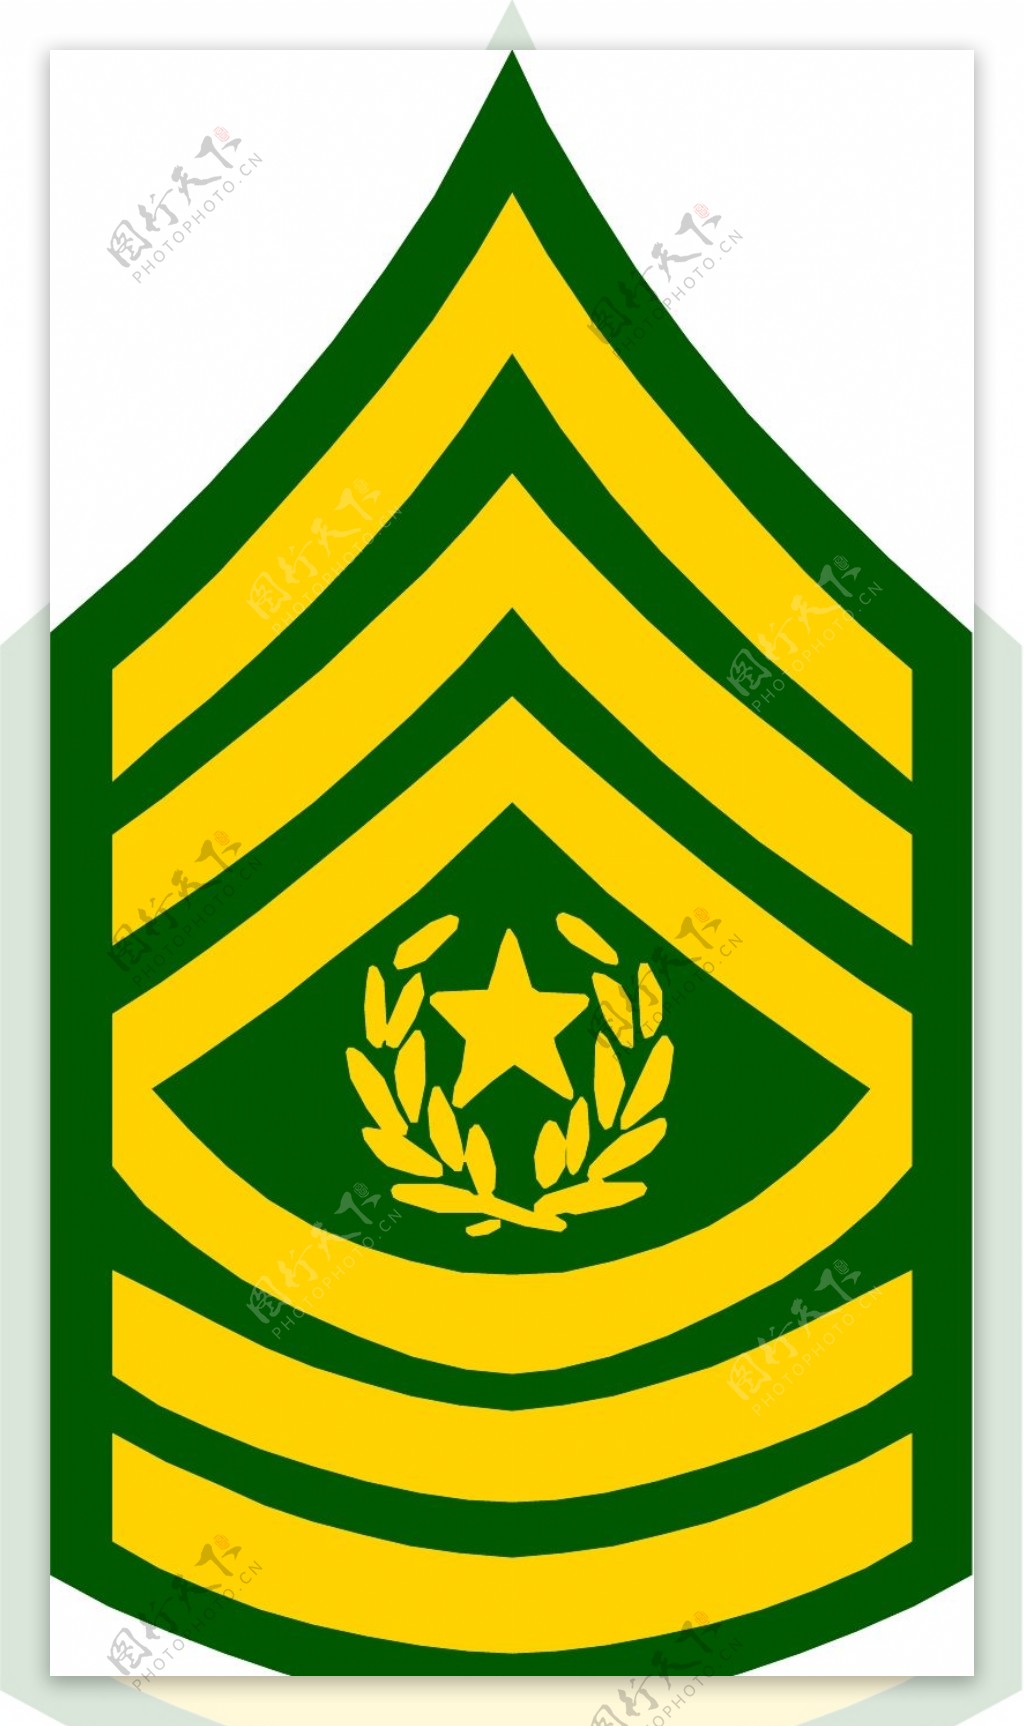 军队徽章0235